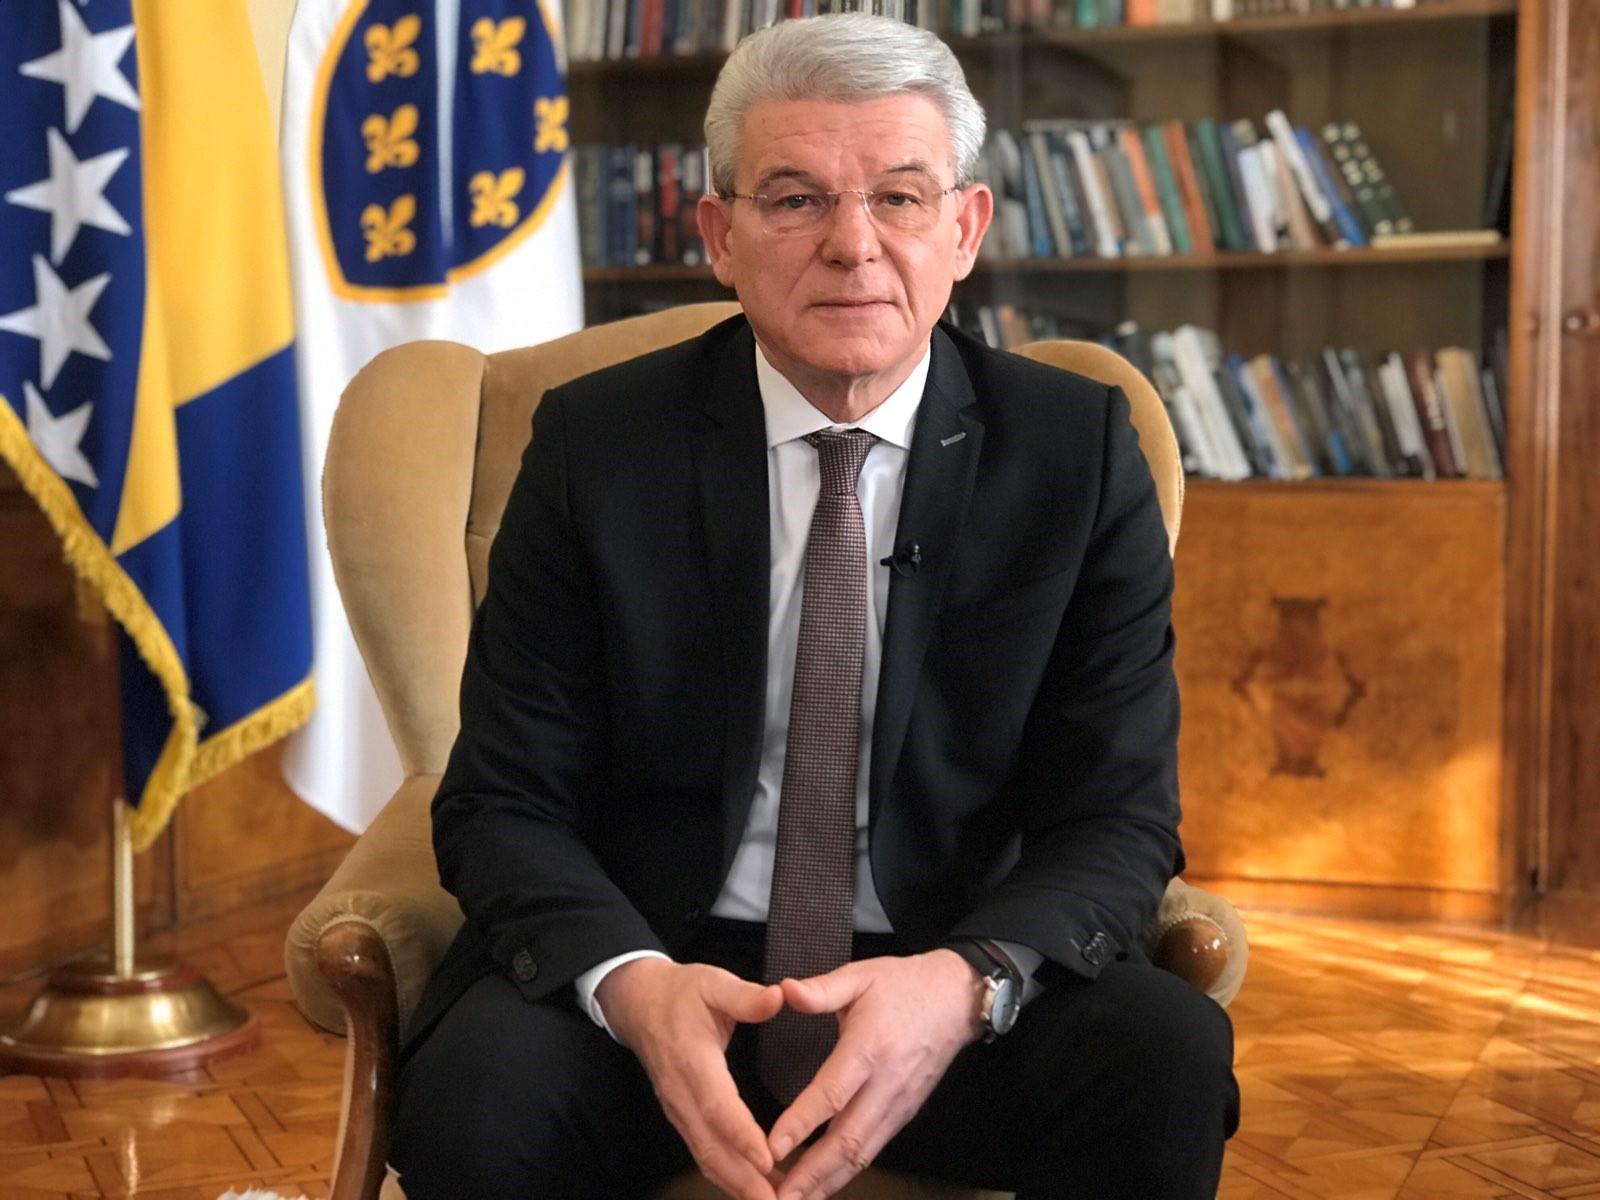 Šefik Džaferović odlazi u Nizozemsku: Sastaje se sa kraljem i premijerom